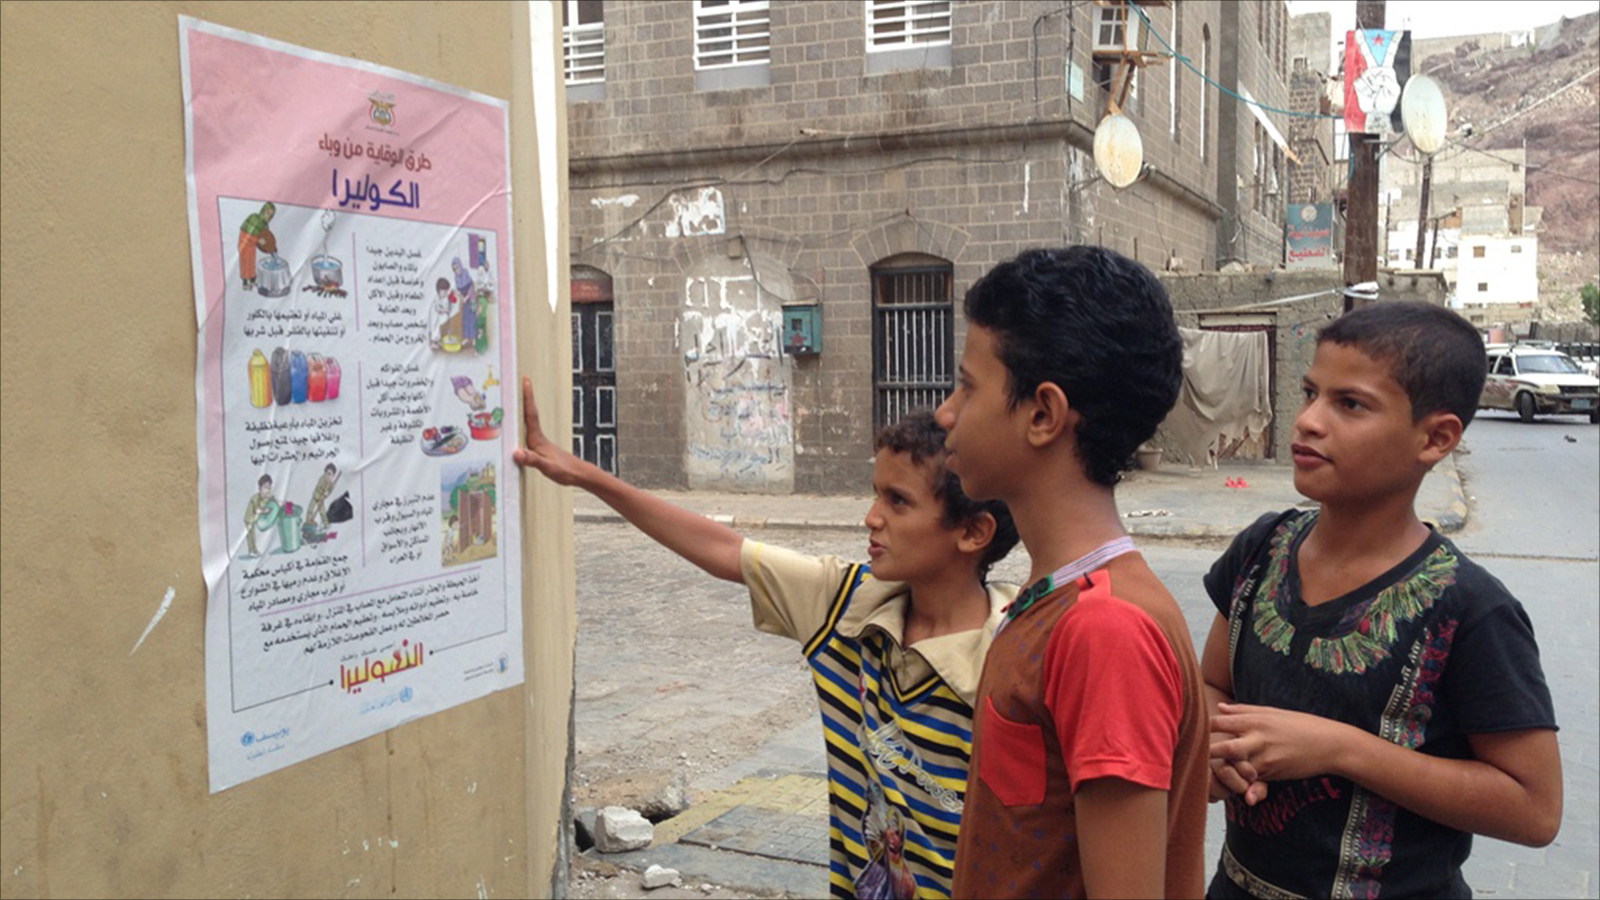 ‪ملصق عن الوقاية من الكوليرا بأحد شوارع مدينة عدن‬ ملصق عن الوقاية من الكوليرا بأحد شوارع مدينة عدن (الجزيرة)